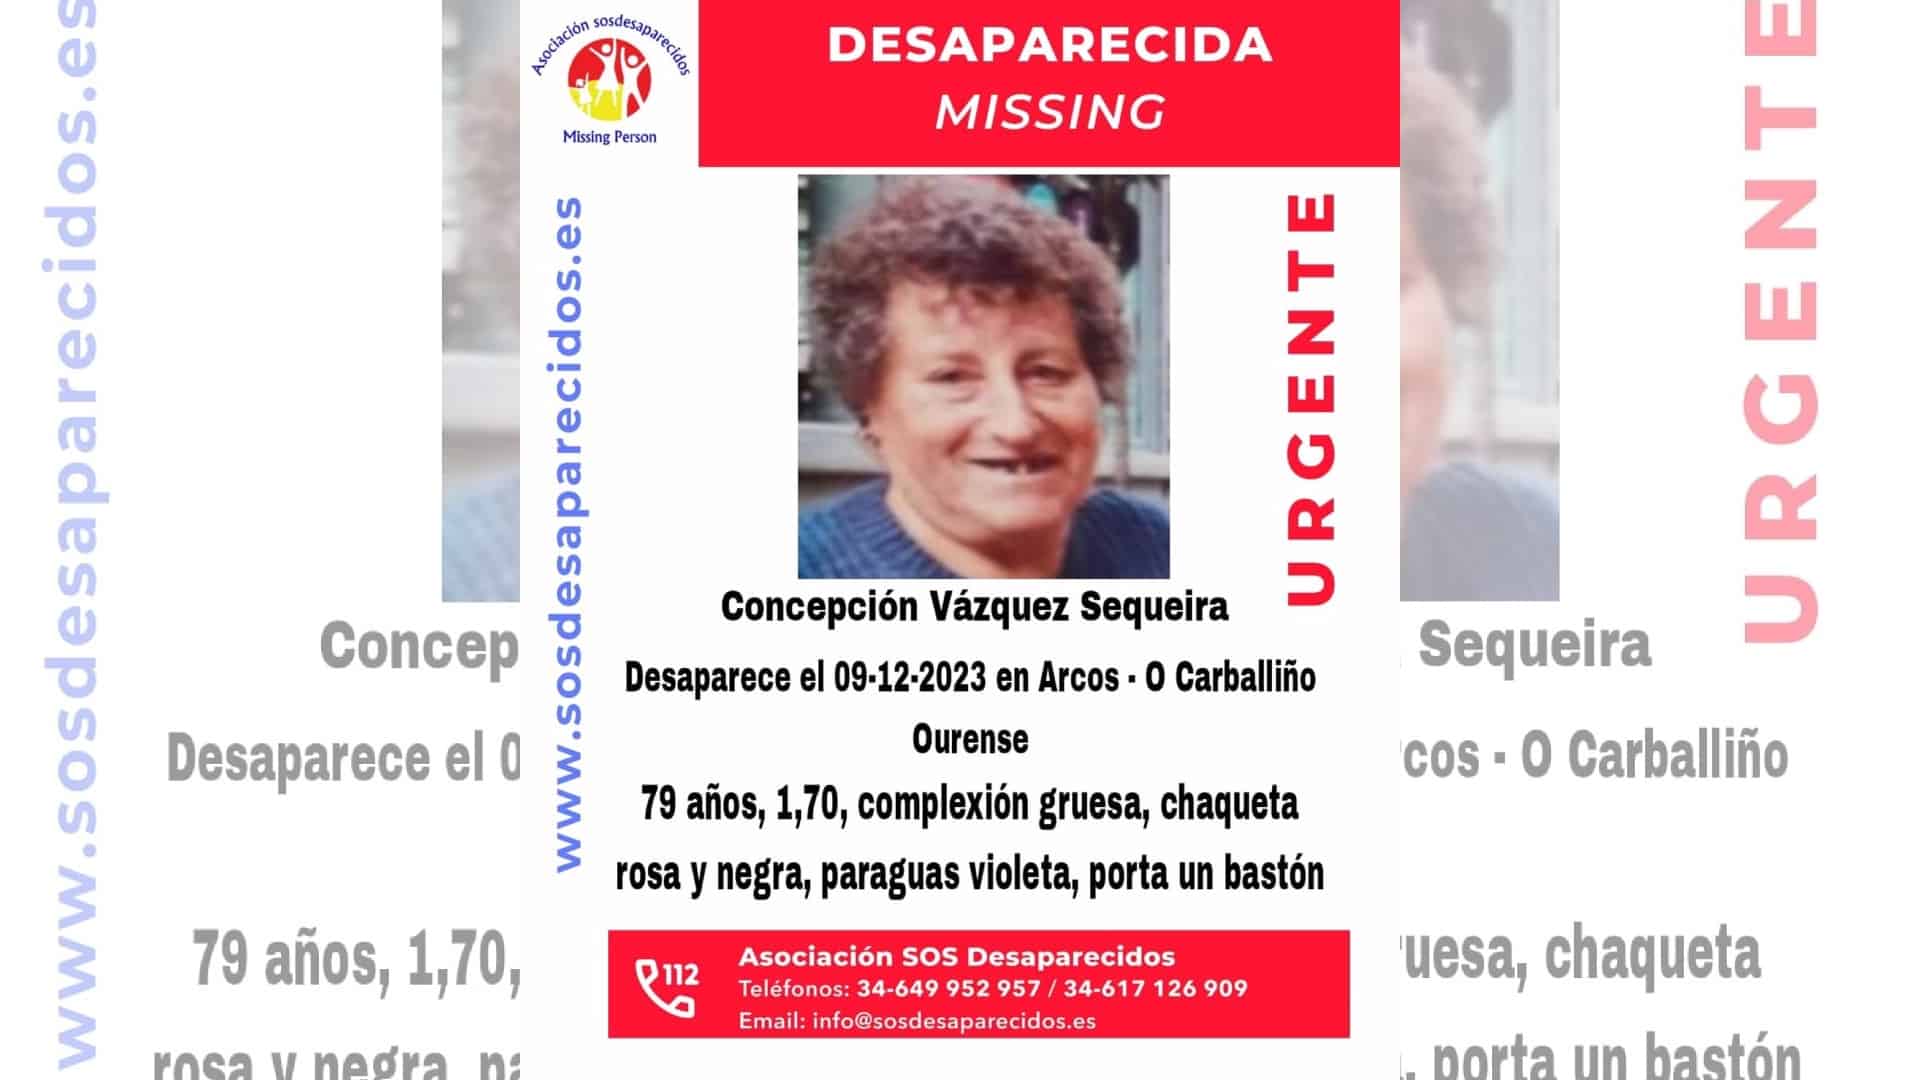 Concepción Vázquez Sequeira, desaparecida en O Carballiño | @SOSDESAPARECIDOS